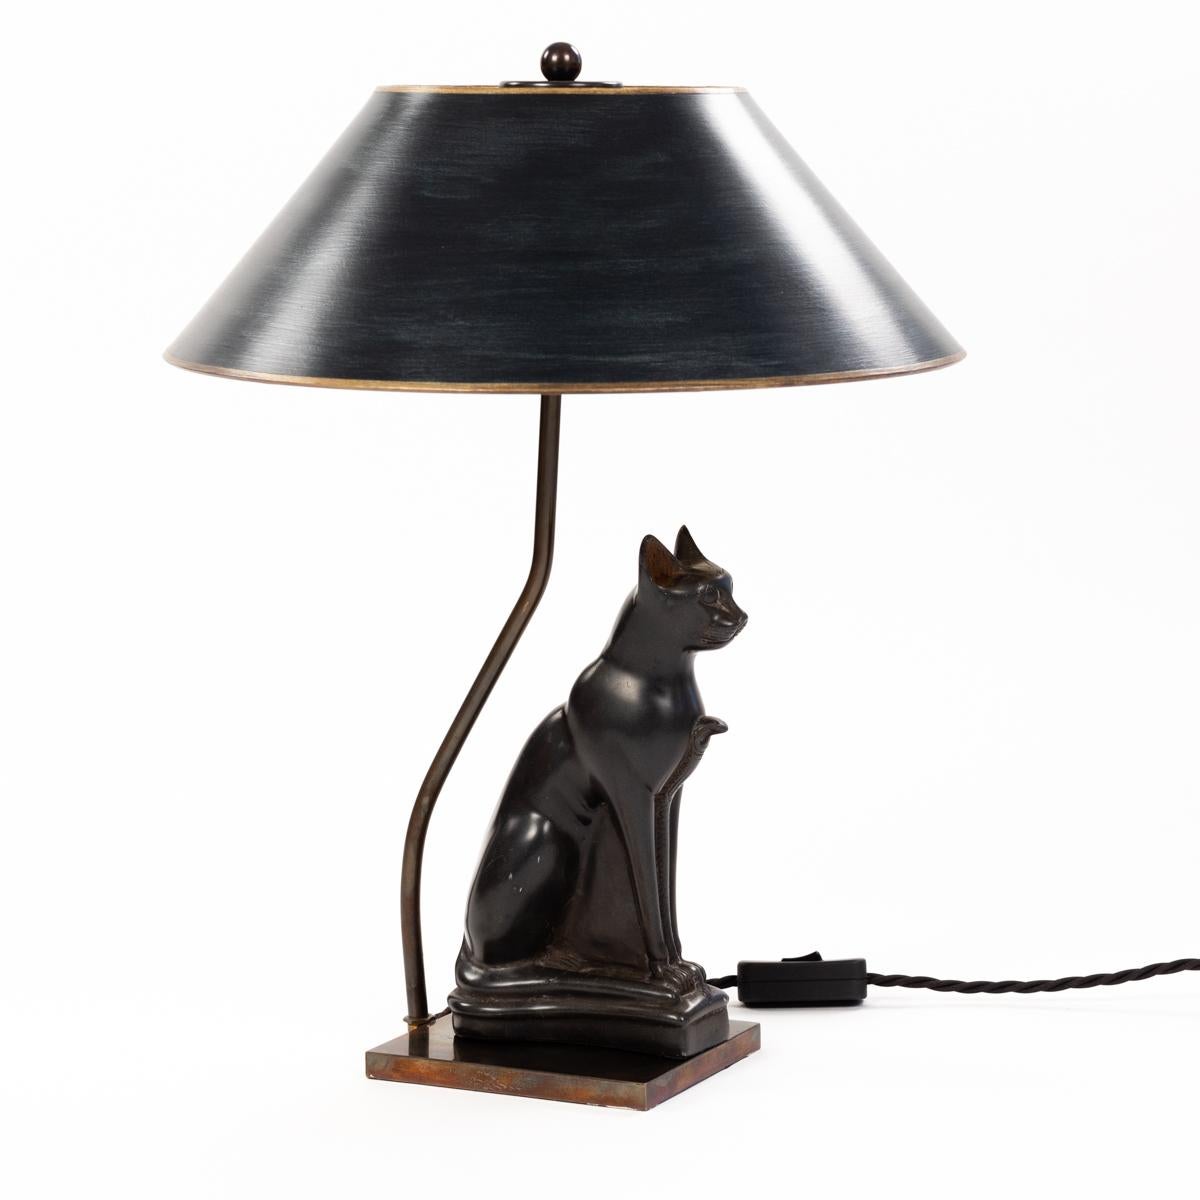 Figurale Tischlampe Sitzender Katzengott aus Stein Frankreich 1940-er.

Das Objekt stammt aus der Zeit des Art déco und ist sehr fein in Stein gearbeitet.
Das Tier sitzt majestätisch und gerade und strahlt eine gewisse Ruhe aus.
Die